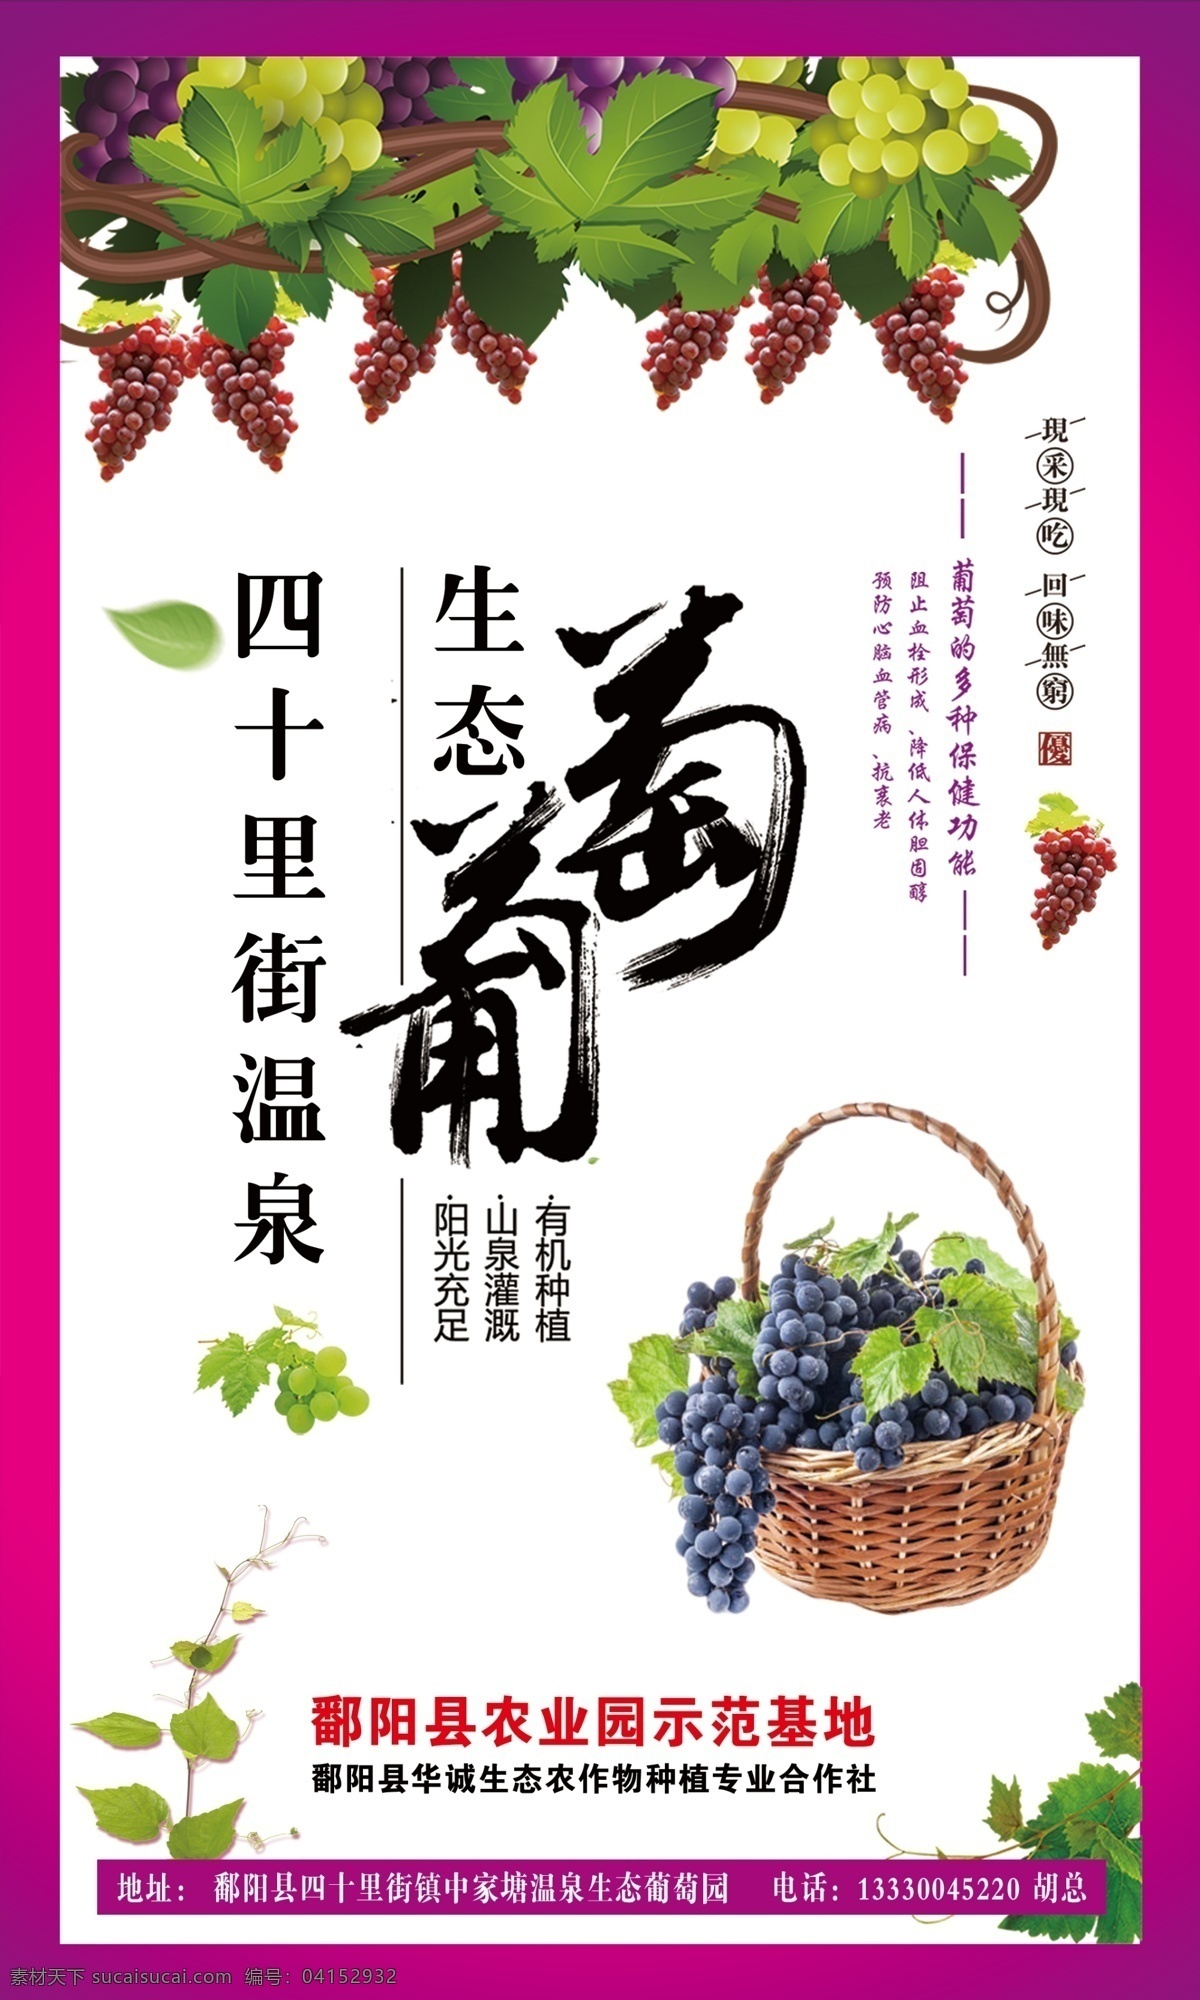 葡萄海报 葡萄标签 生态葡萄 葡萄采摘 温泉葡萄 葡萄广告 星创设计